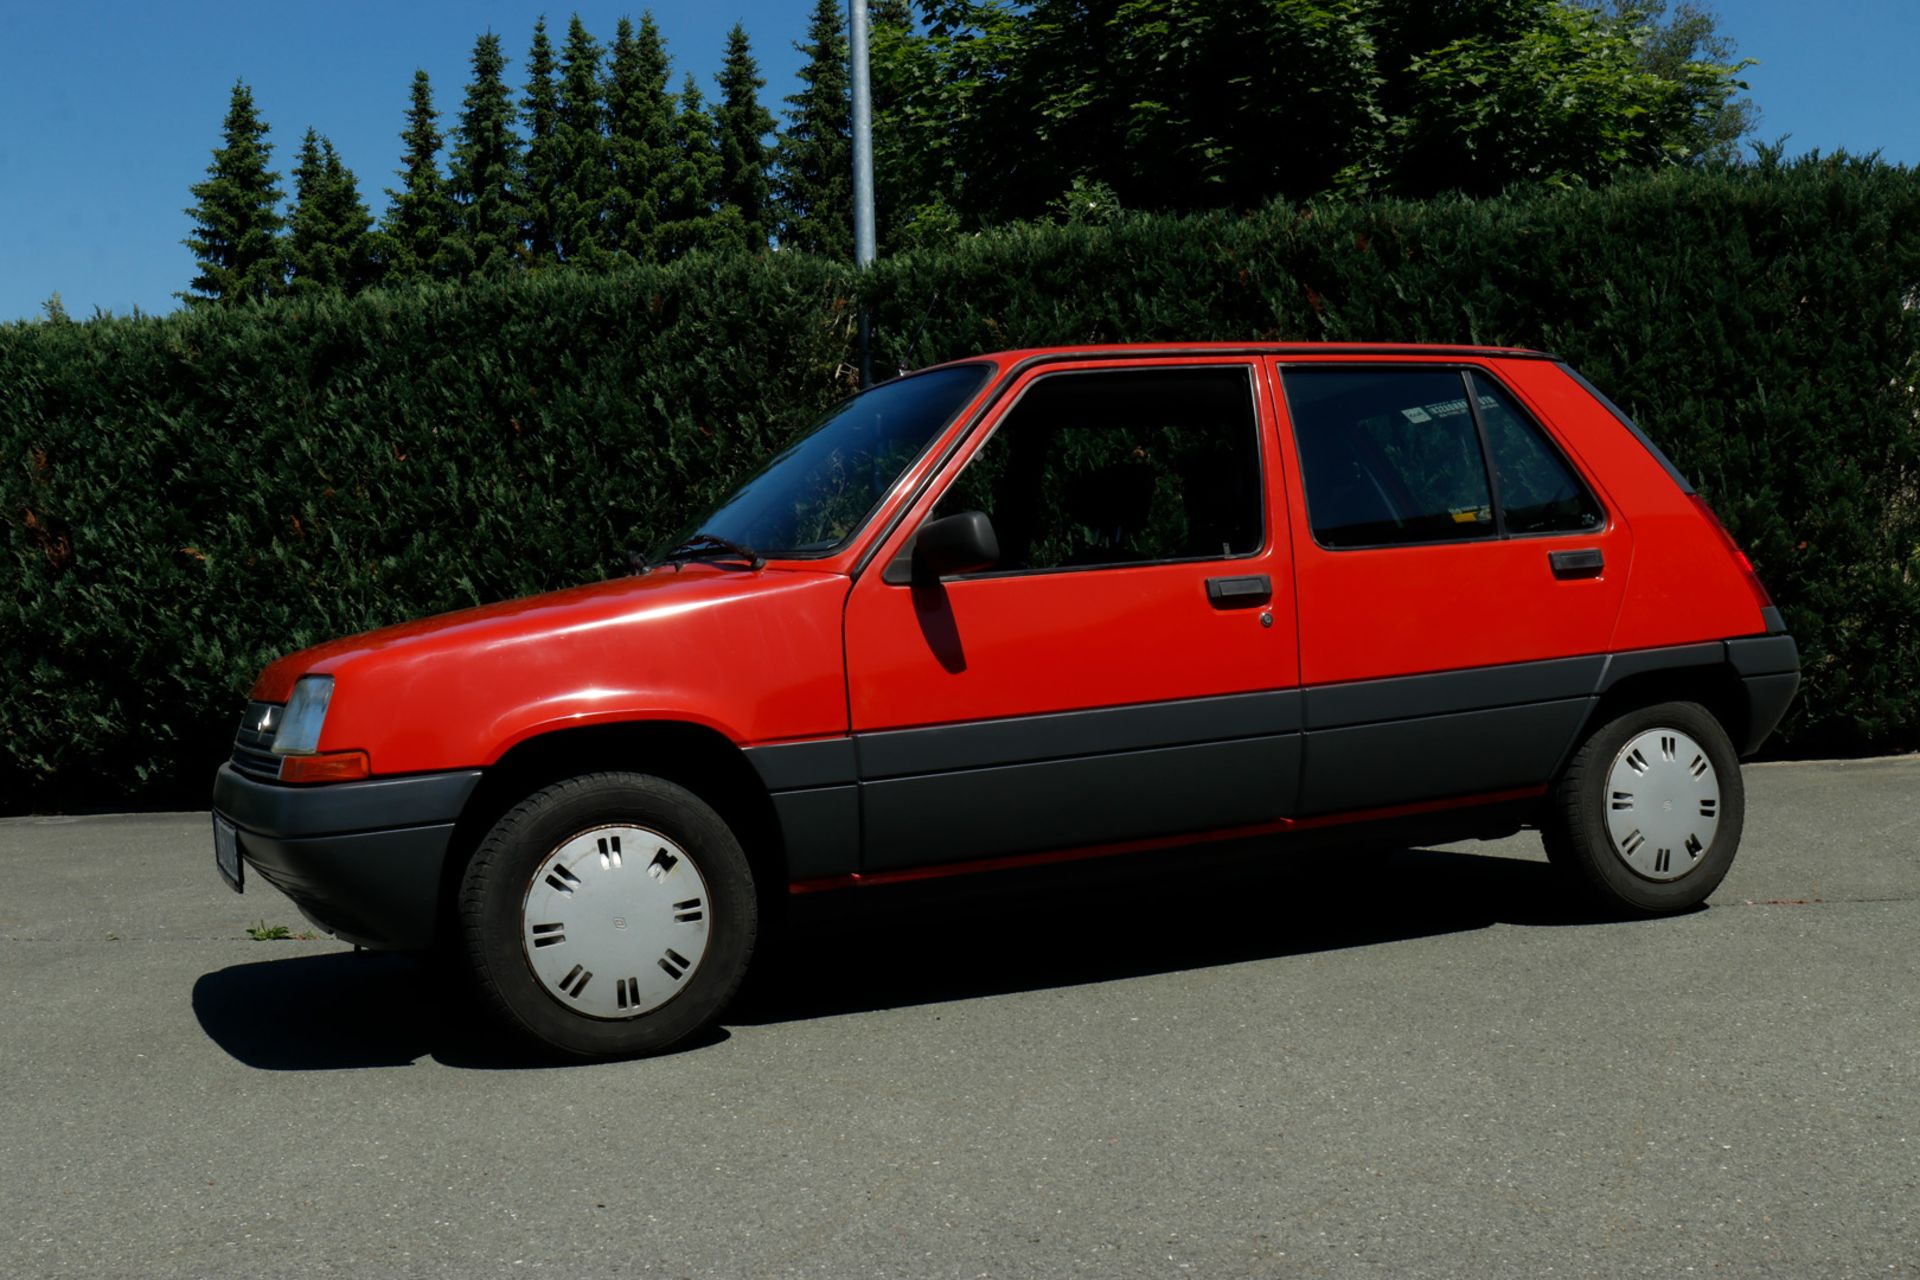 Renault R5, VP1B40 301G05 20581, Bj. 2.4.1986, KW49/5250, 5-Türig, Automatic, Original - Image 5 of 26